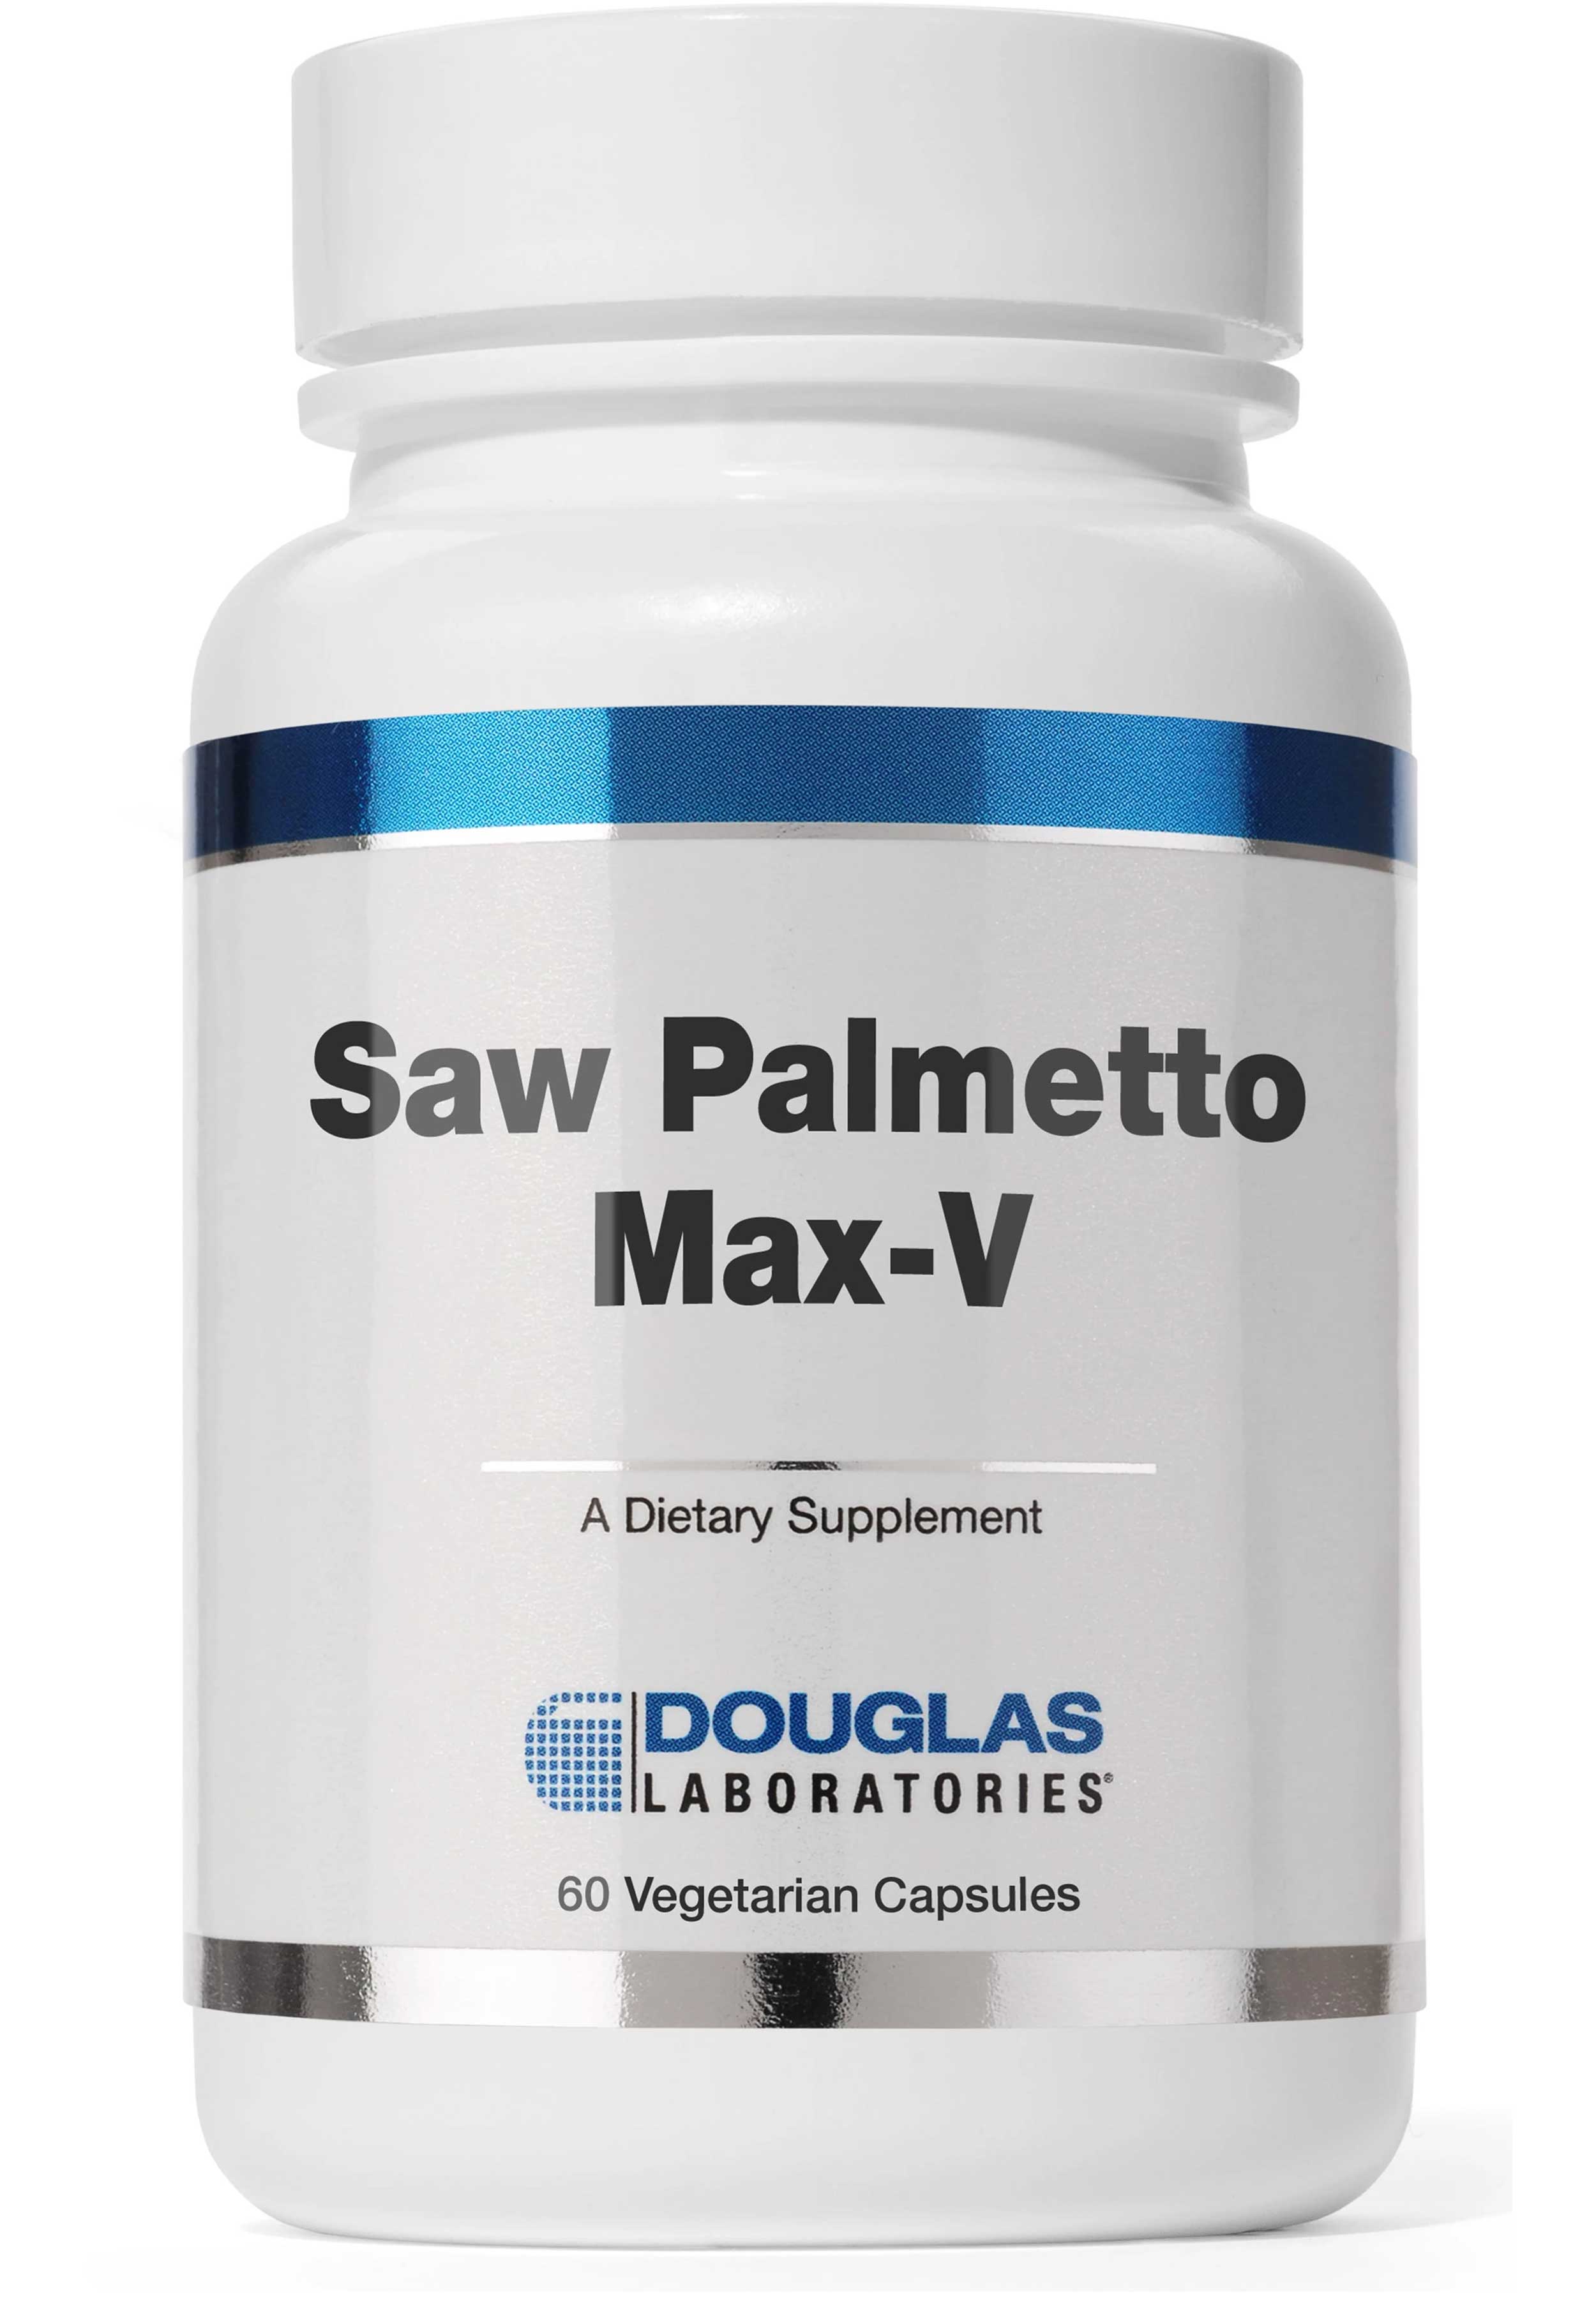 Douglas Laboratories Saw Palmetto Max-V